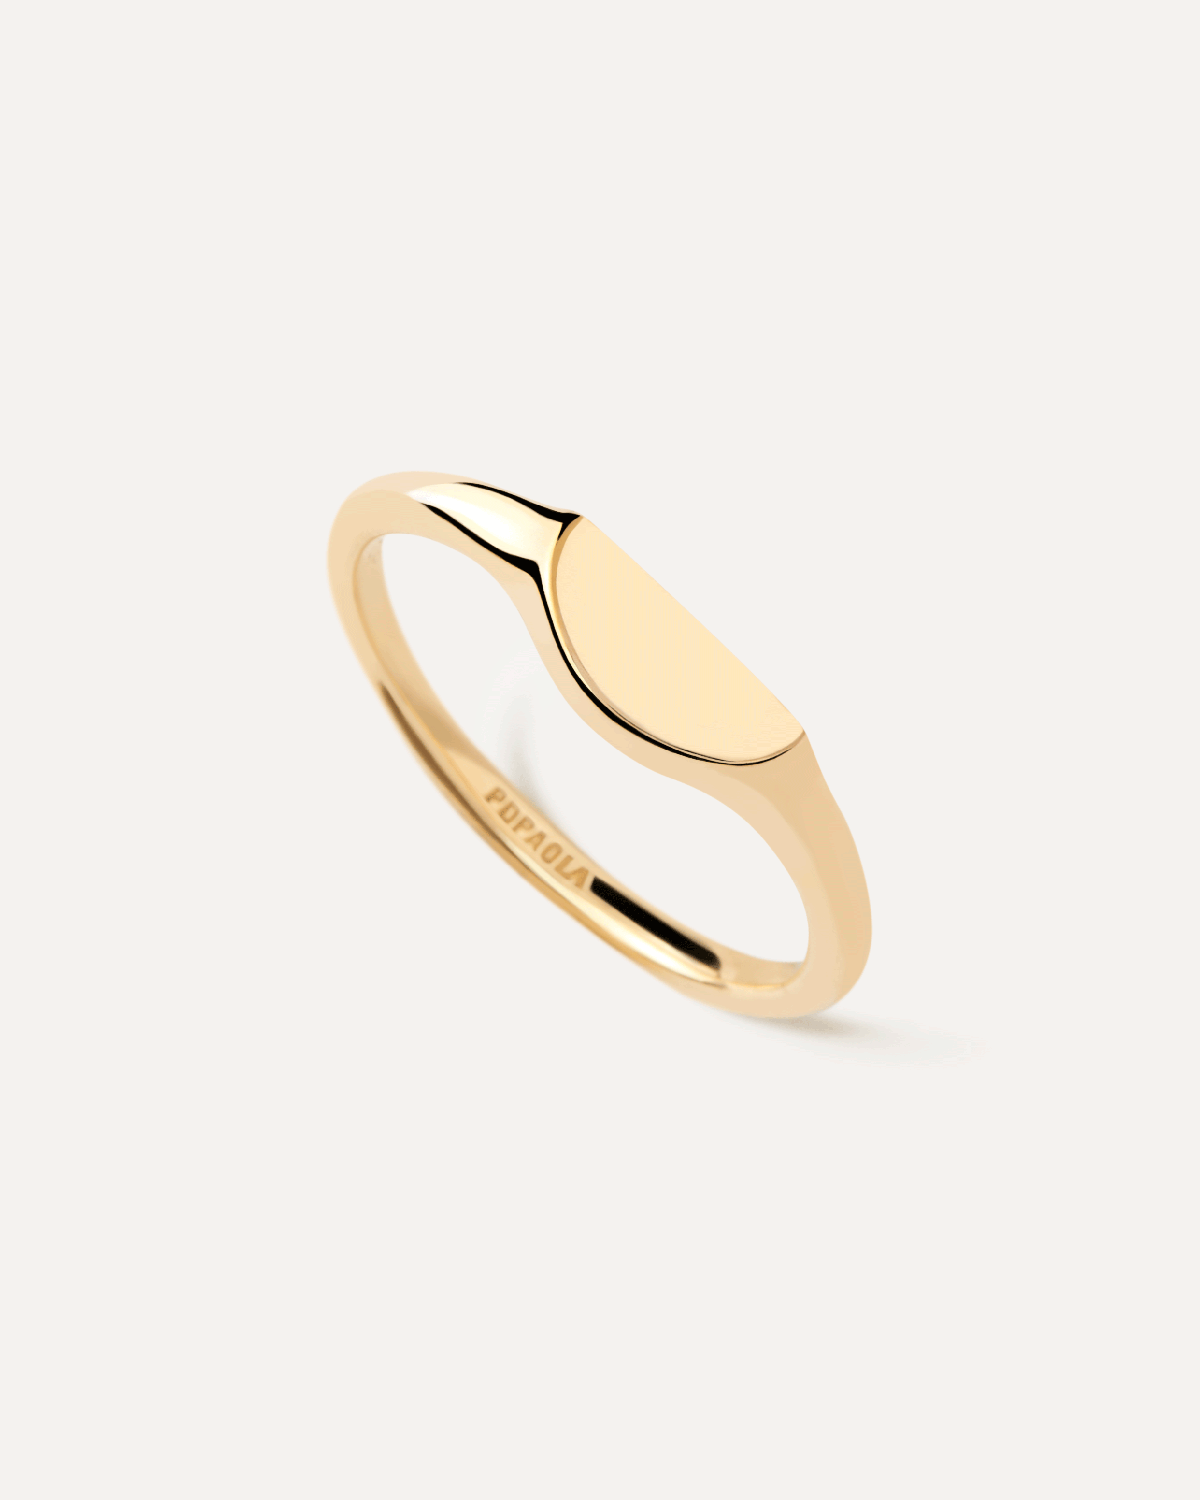 Anello sigillo Half Circle mini. Mini anello sigillo personalizzabile placcato oro a forma di mezzo cerchio. Acquista le ultime novità di PDPAOLA. Effettua il tuo ordine in tutta sicurezza e non lasciarti sfuggire questo best seller.